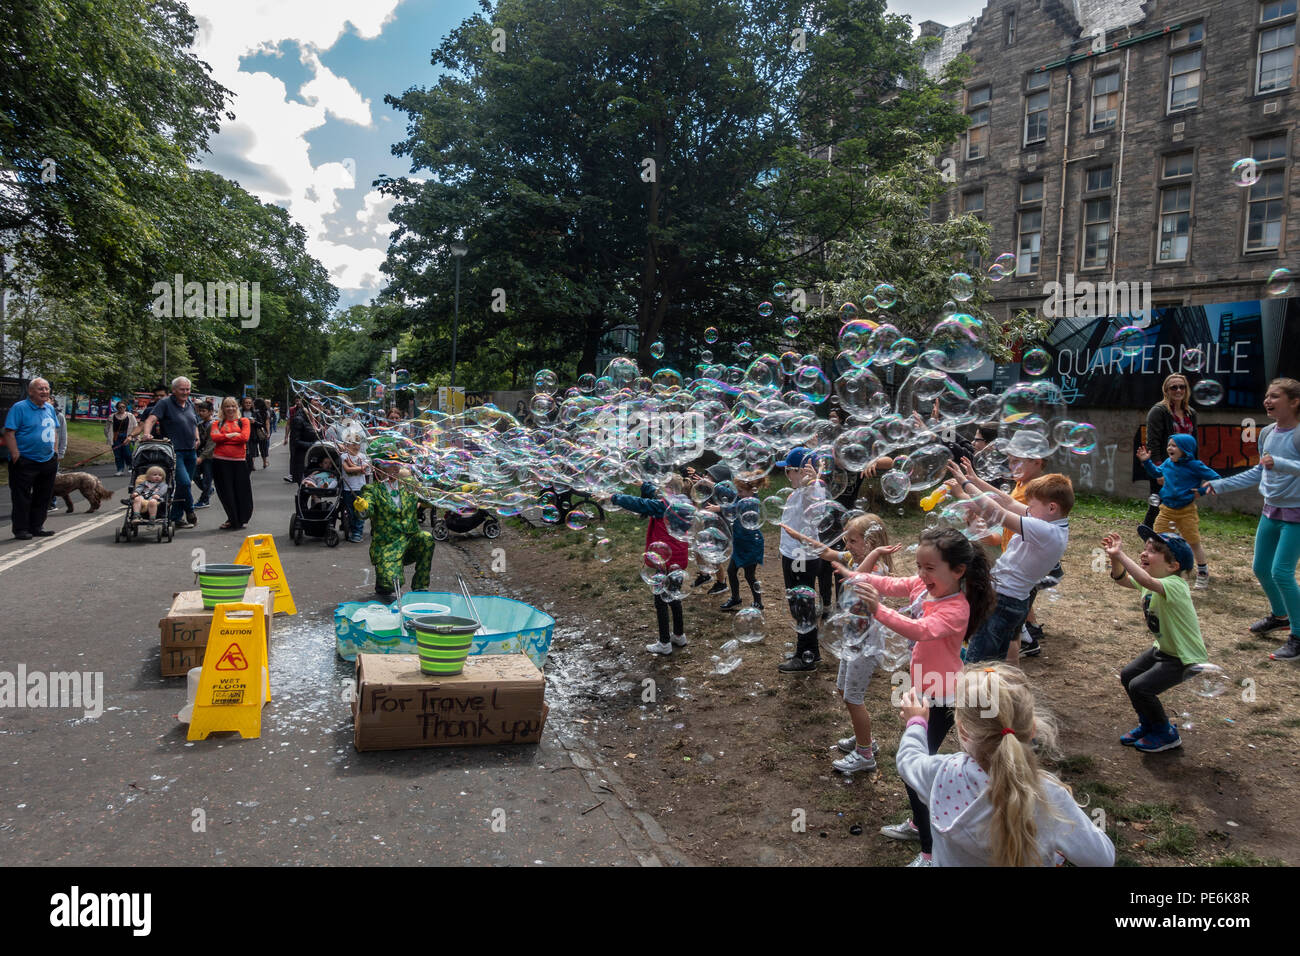 Artiste de rue, Freakbubbles distraire les enfants avec des masses de bulles dans la prairie au milieu de marche, Edinburgh, Edinburgh Festival Fringe pendant. Banque D'Images